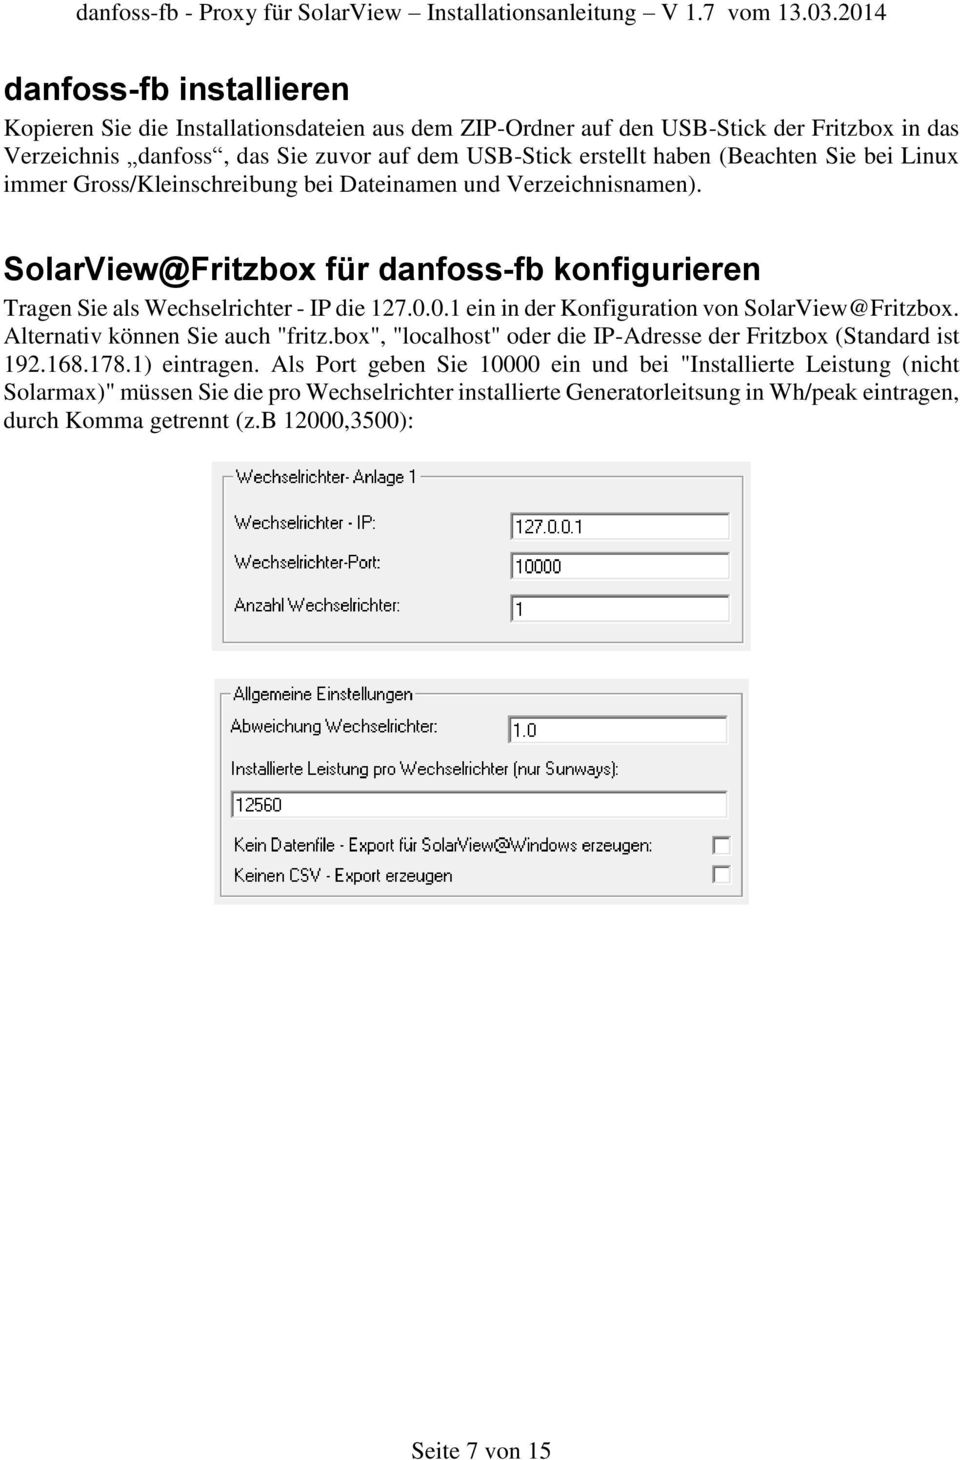 0.1 ein in der Konfiguration von SolarView@Fritzbox. Alternativ können Sie auch "fritz.box", "localhost" oder die IP-Adresse der Fritzbox (Standard ist 192.168.178.1) eintragen.